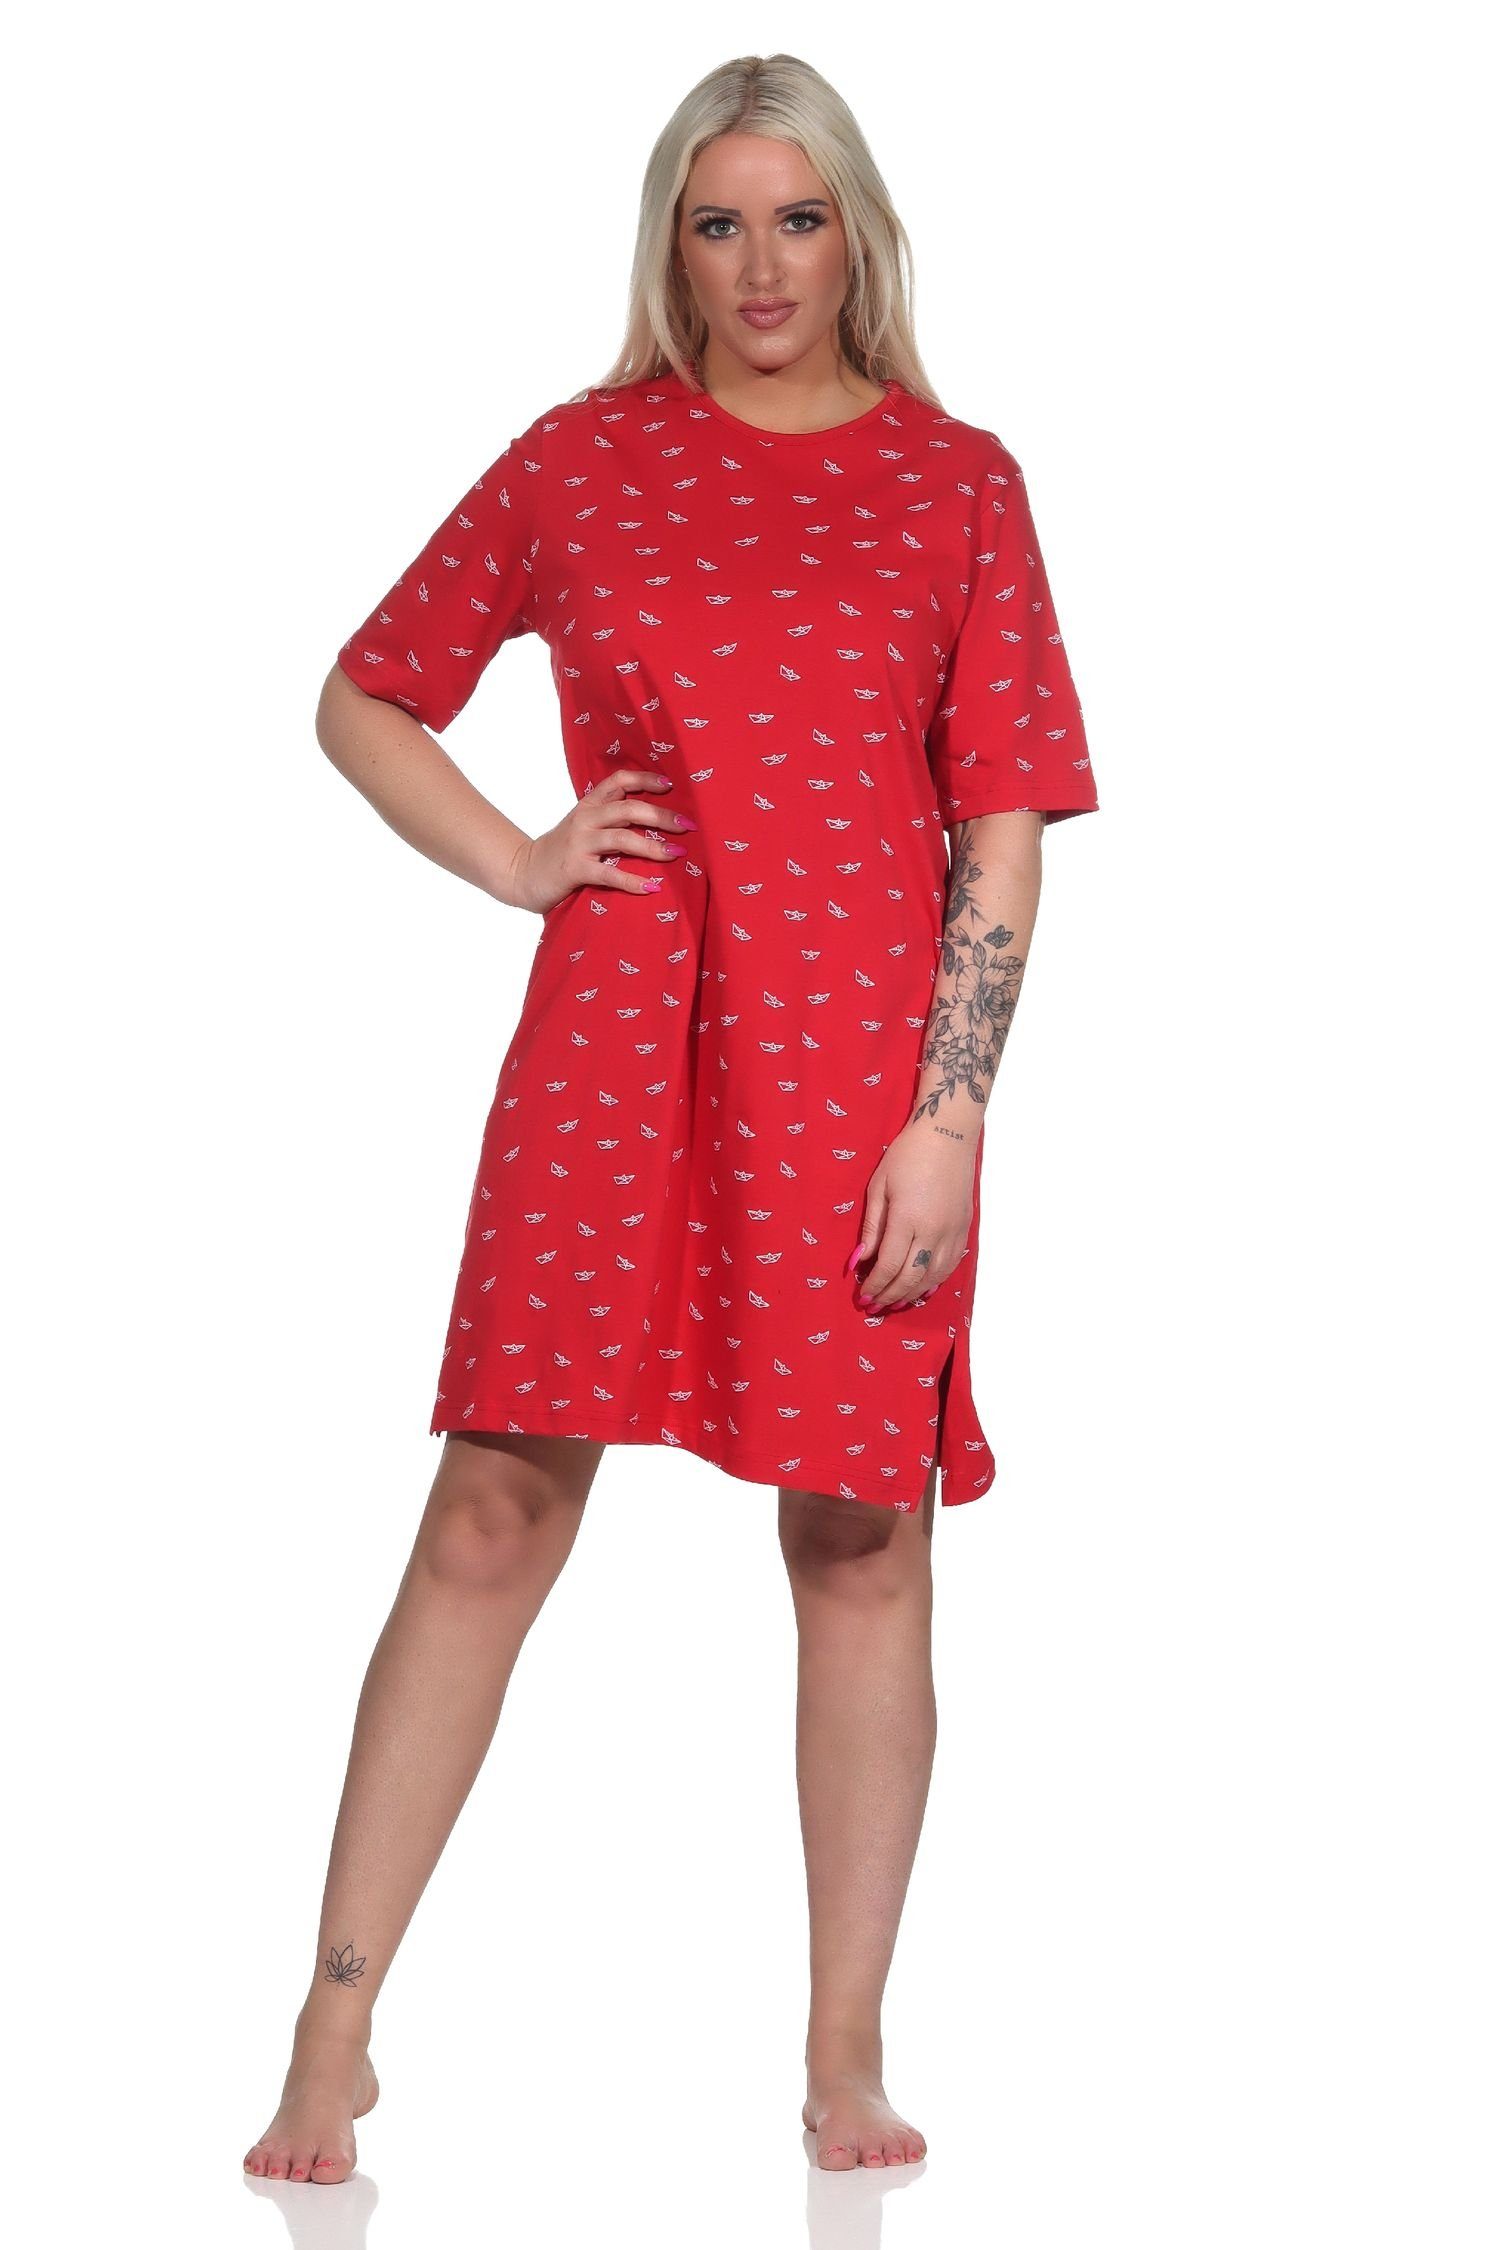 Normann Nachthemd Damen kurzarm Nachthemd in maritimer Optik - auch in Übergrössen rot